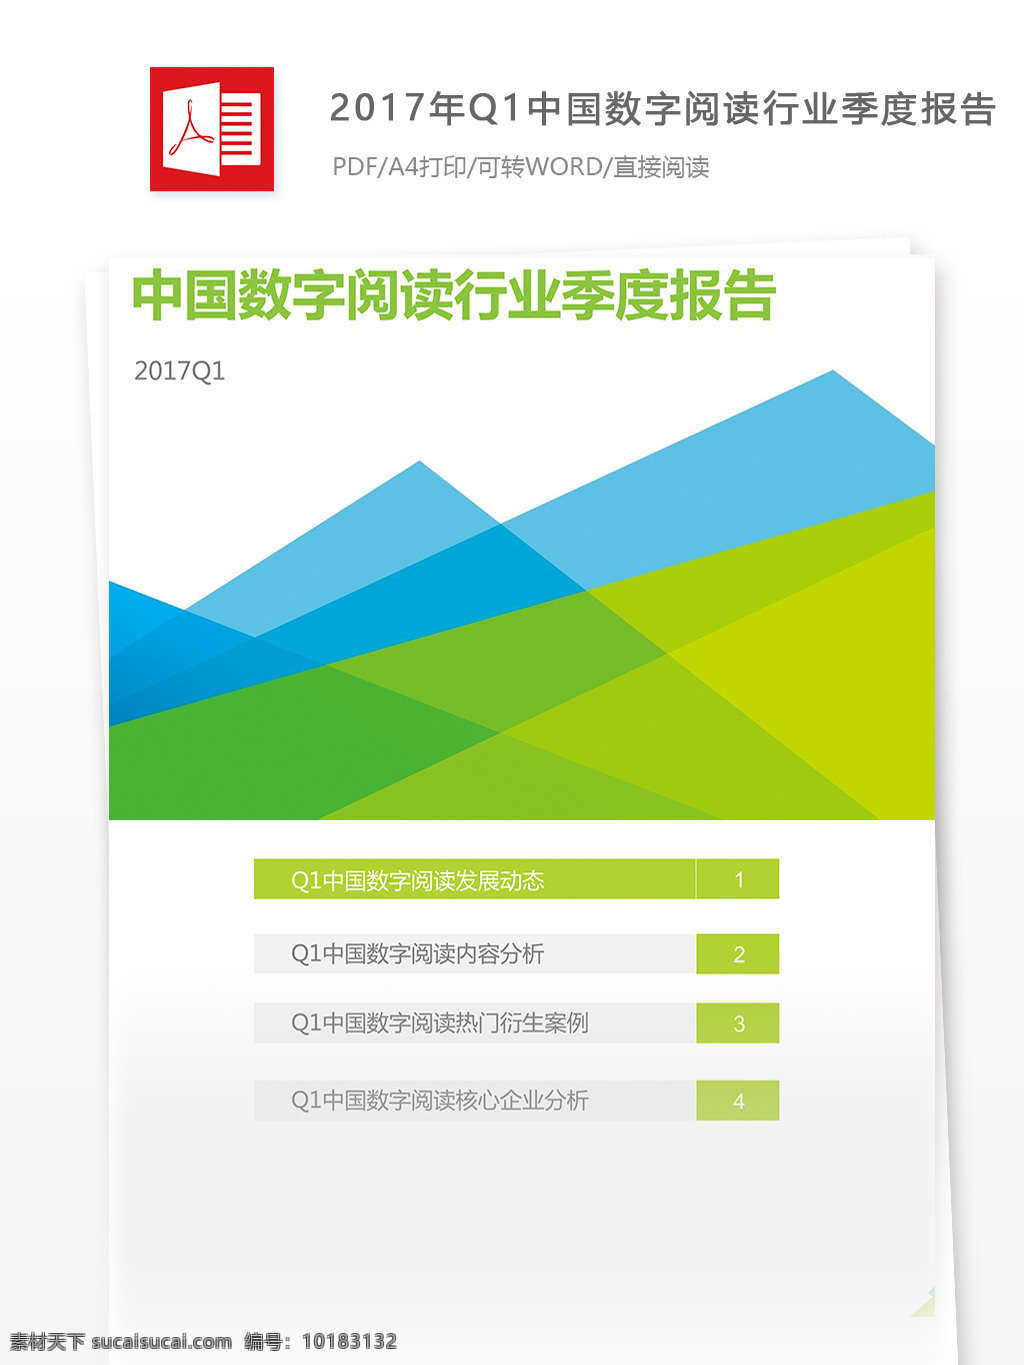 中国 数字 阅读 行业 季度 互联网 分析报告 字 实例 数字阅读 阅读行业 行业分析报告 互联网行业 行业分析 互联网数据